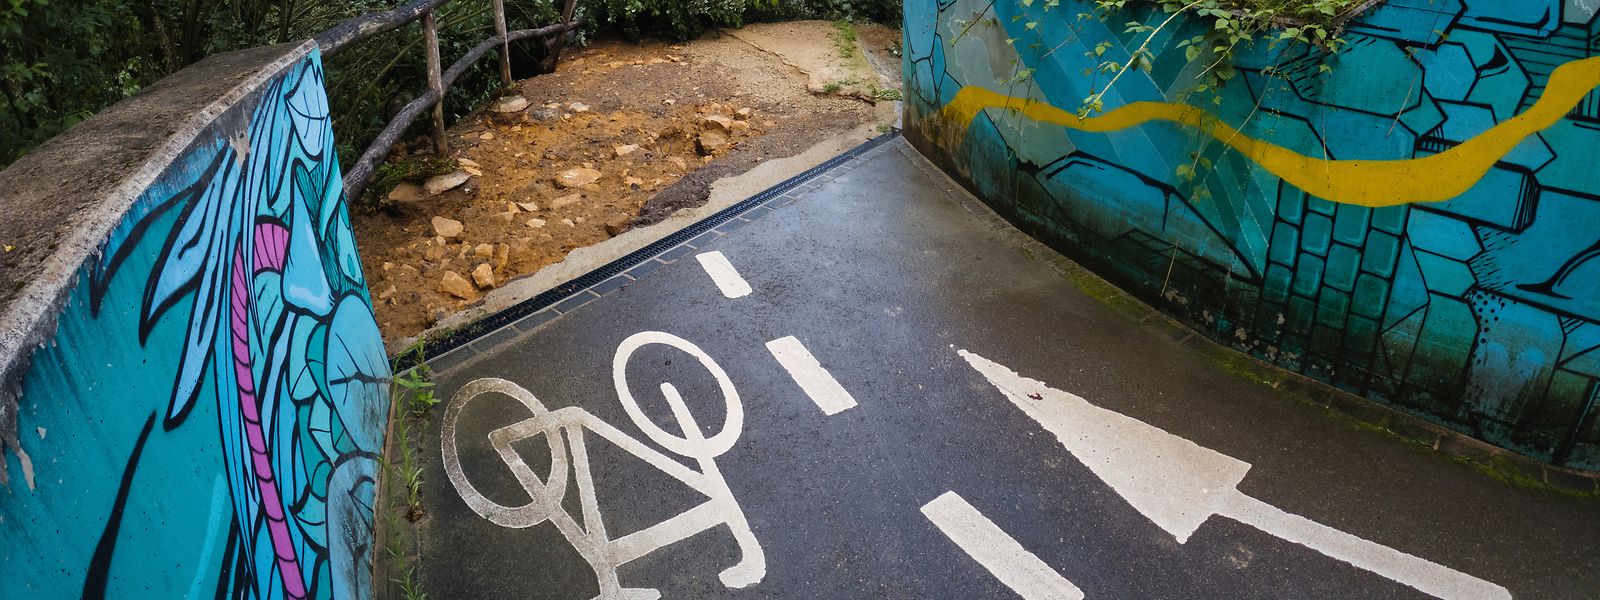 L'Etat a prévu 16 millions d'euros pour réparer les voiries endommagées par les crues, une partie reviendra au réseau dédié aux vélos.